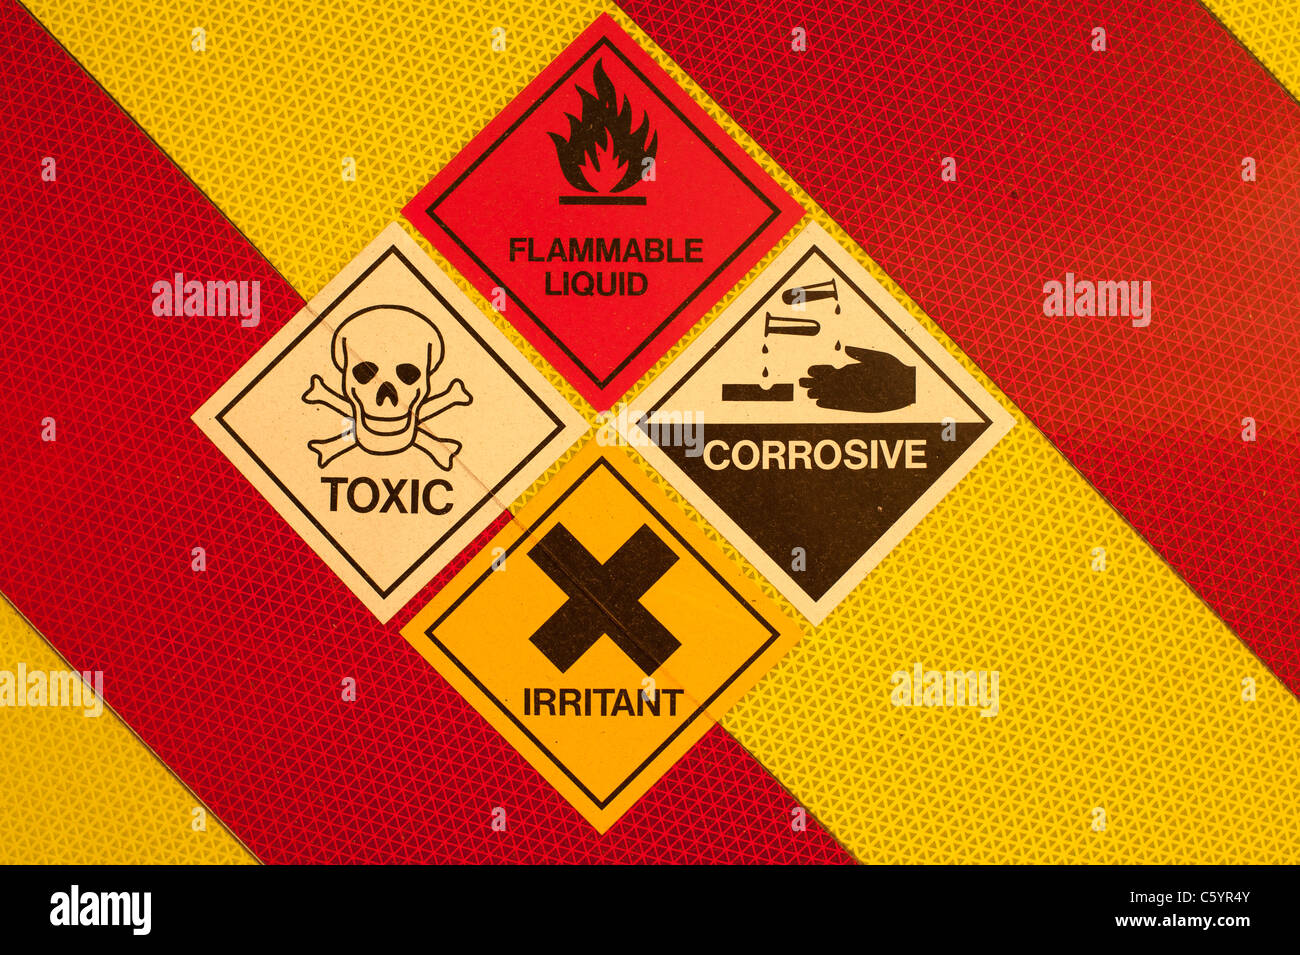 Un ensemble de Danger Liquide inflammable toxique corrosif irritant produits chimiques liquides et symboles d'avertissement sur le rouge et jaune UK Banque D'Images